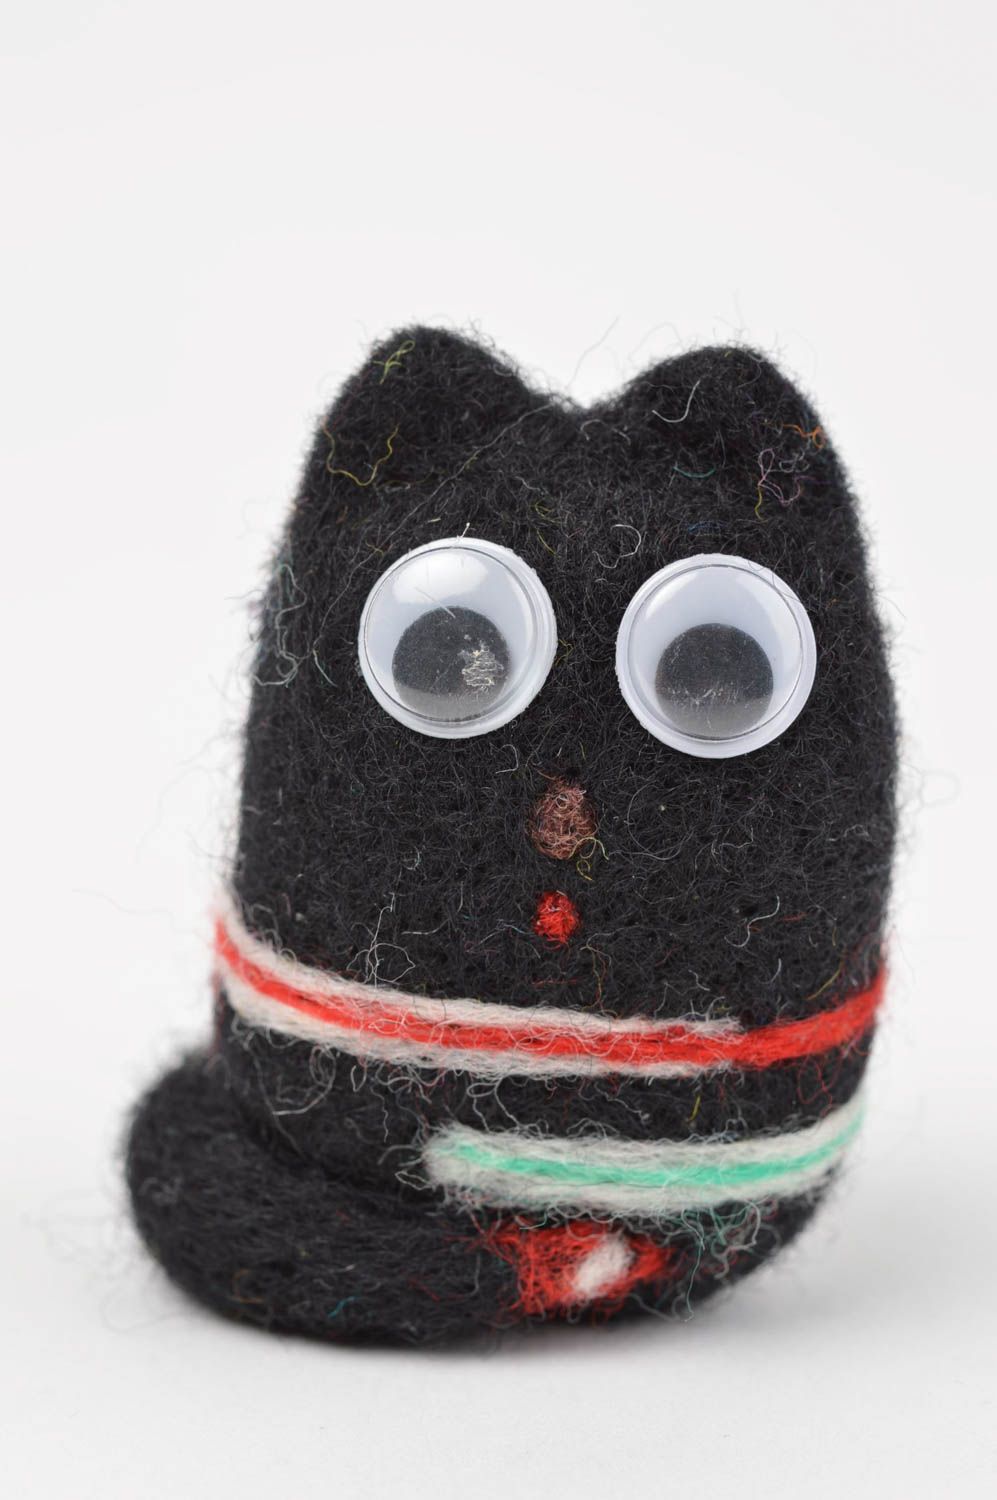 Игрушка ручной работы игрушка из валяной шерсти игрушка котик черный с полосами фото 2